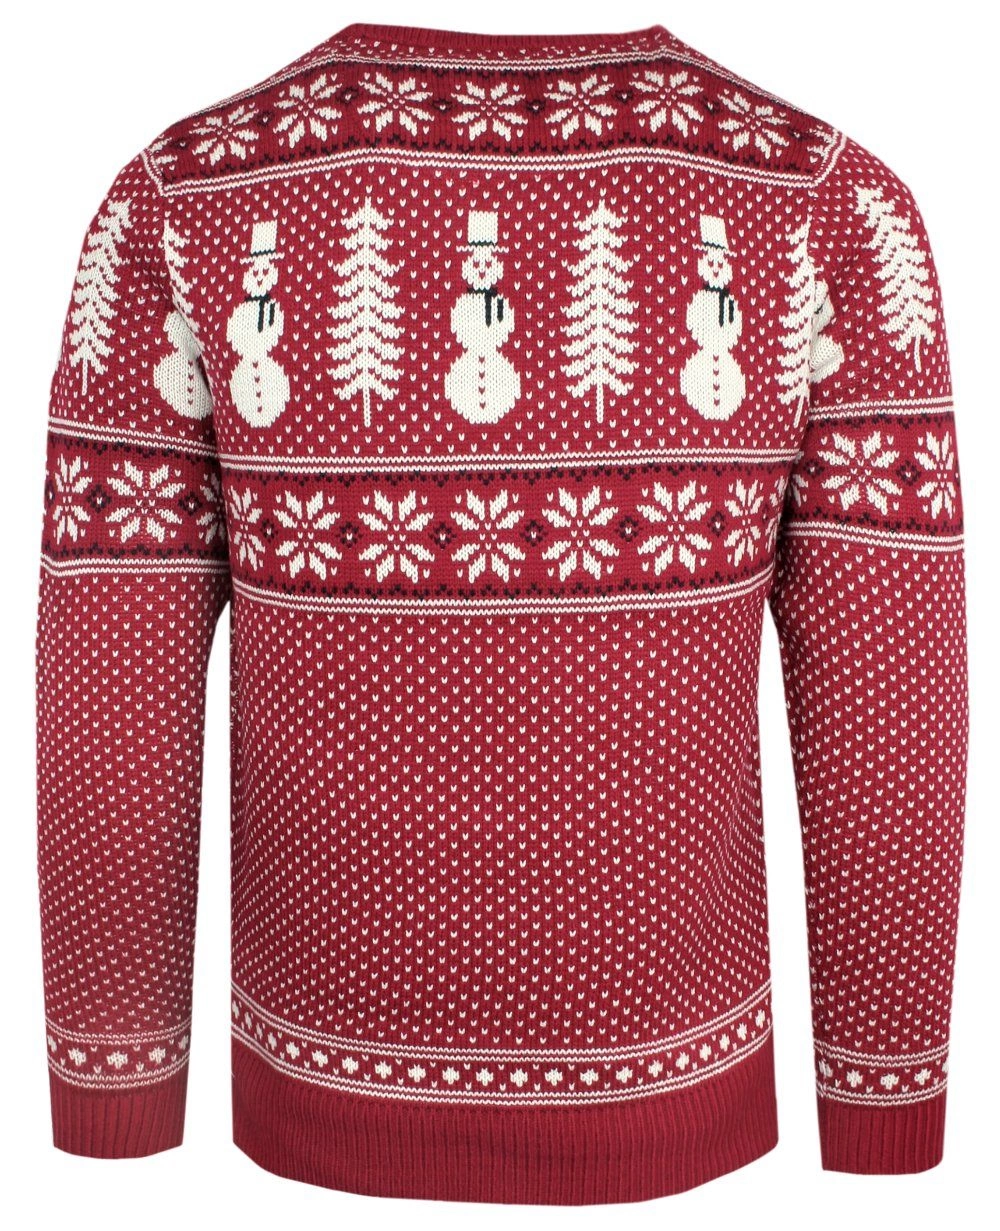 Sweter Świąteczny w Norweski Wzór - Czerwony